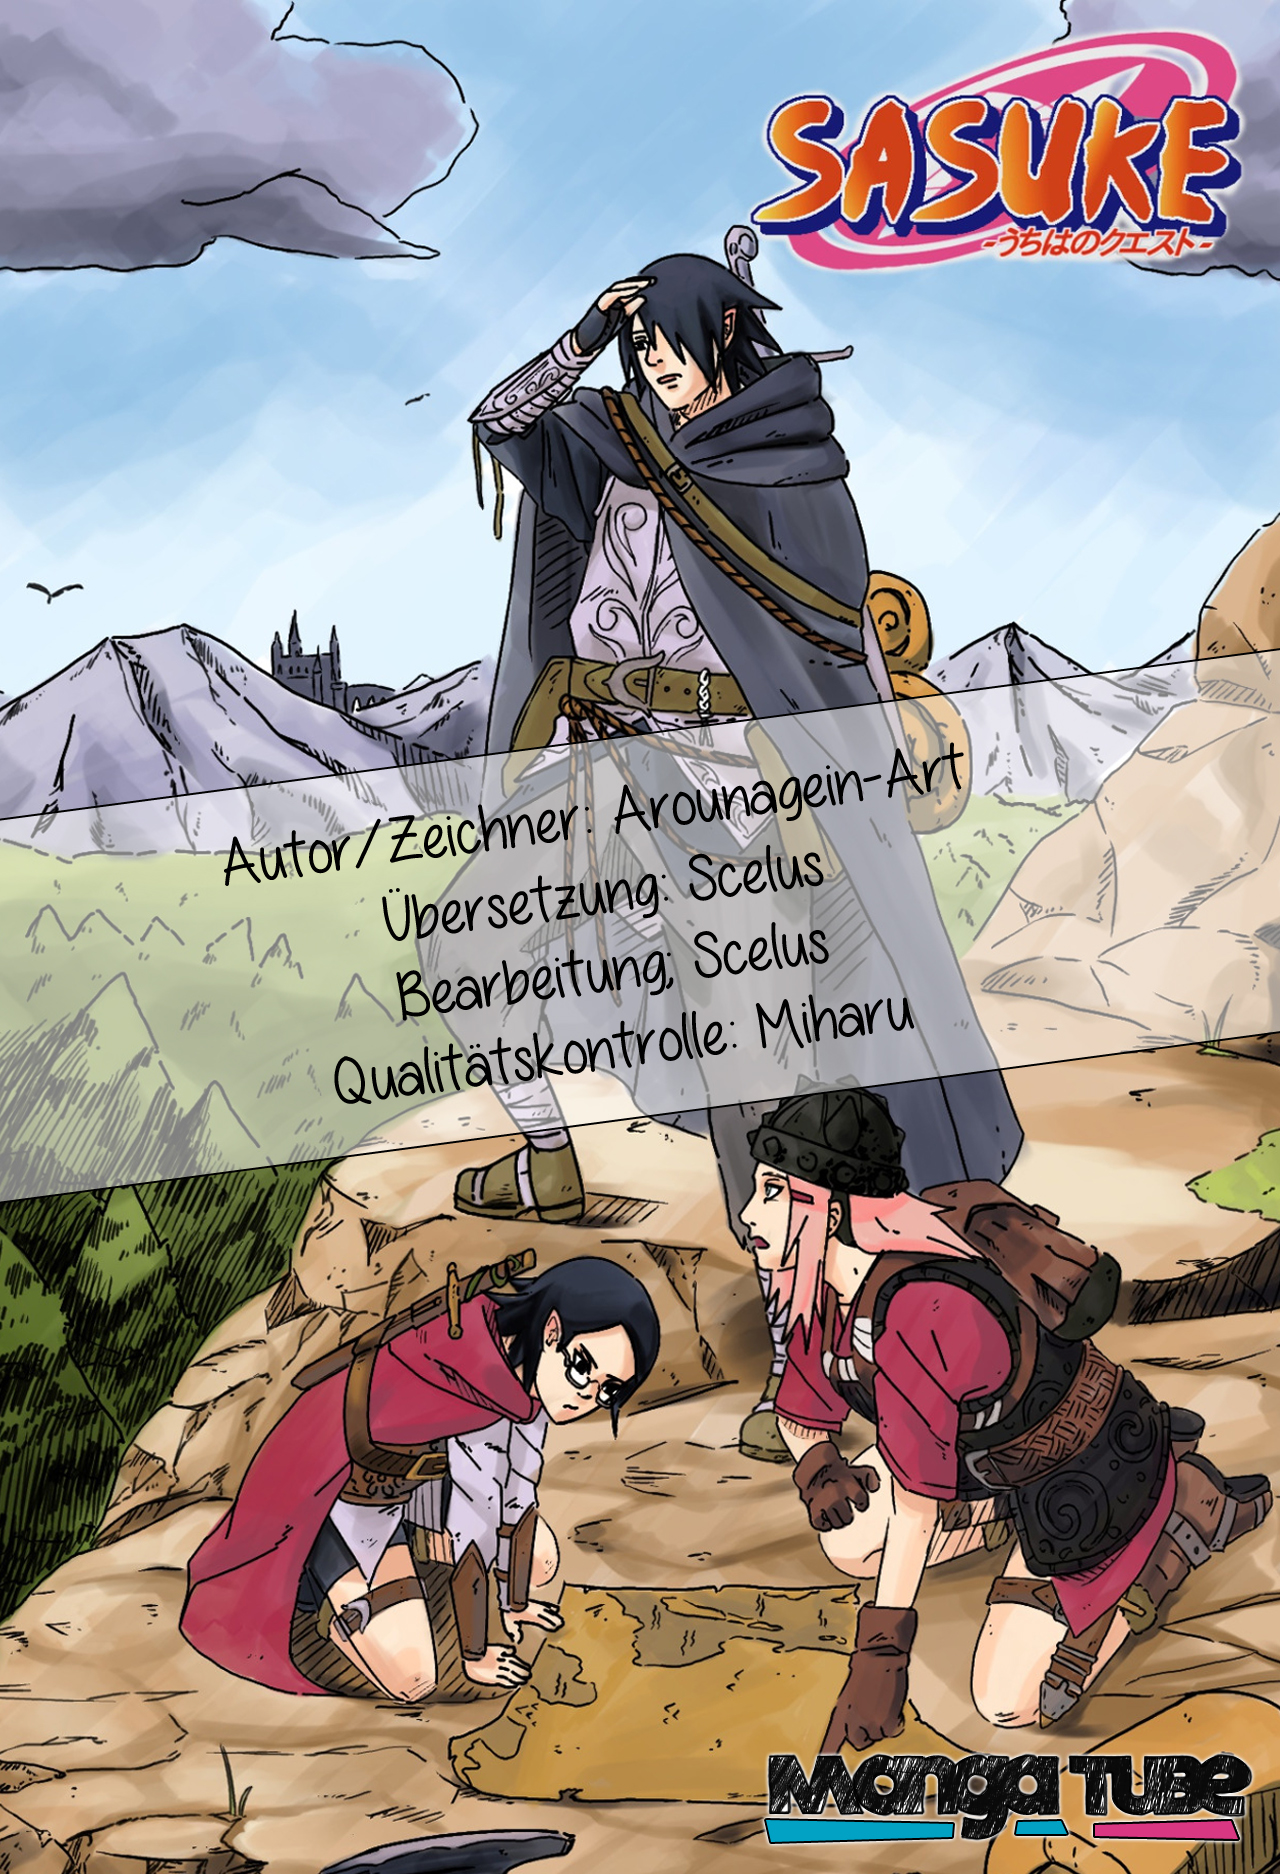 Naruto Doujinshi Kapitel 2: Sasuke x Sakura Seite 1 - Manga auf Deutsch